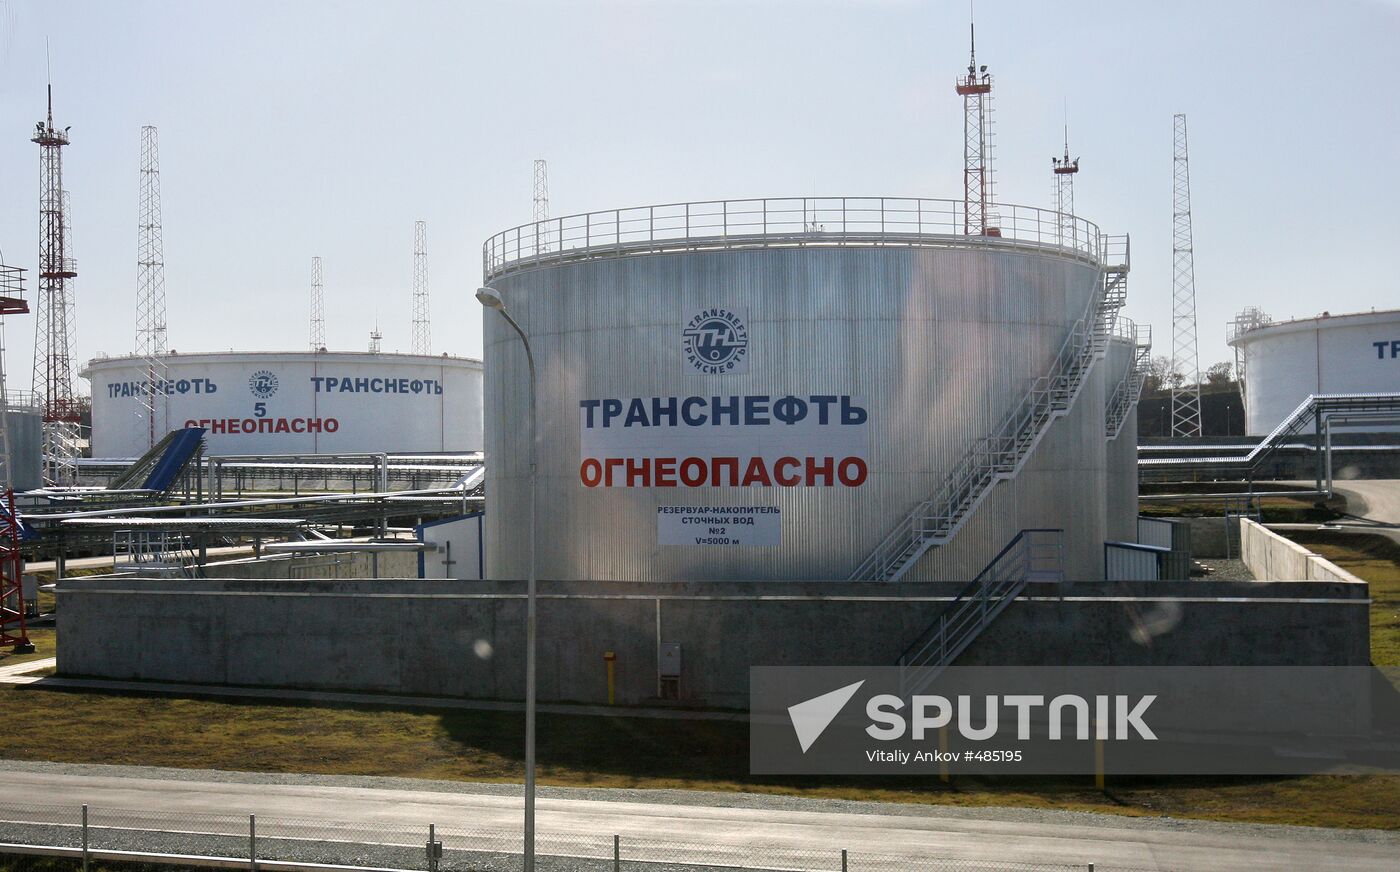 Specialized oil-loading seaport Kozmino in Primorye Territory